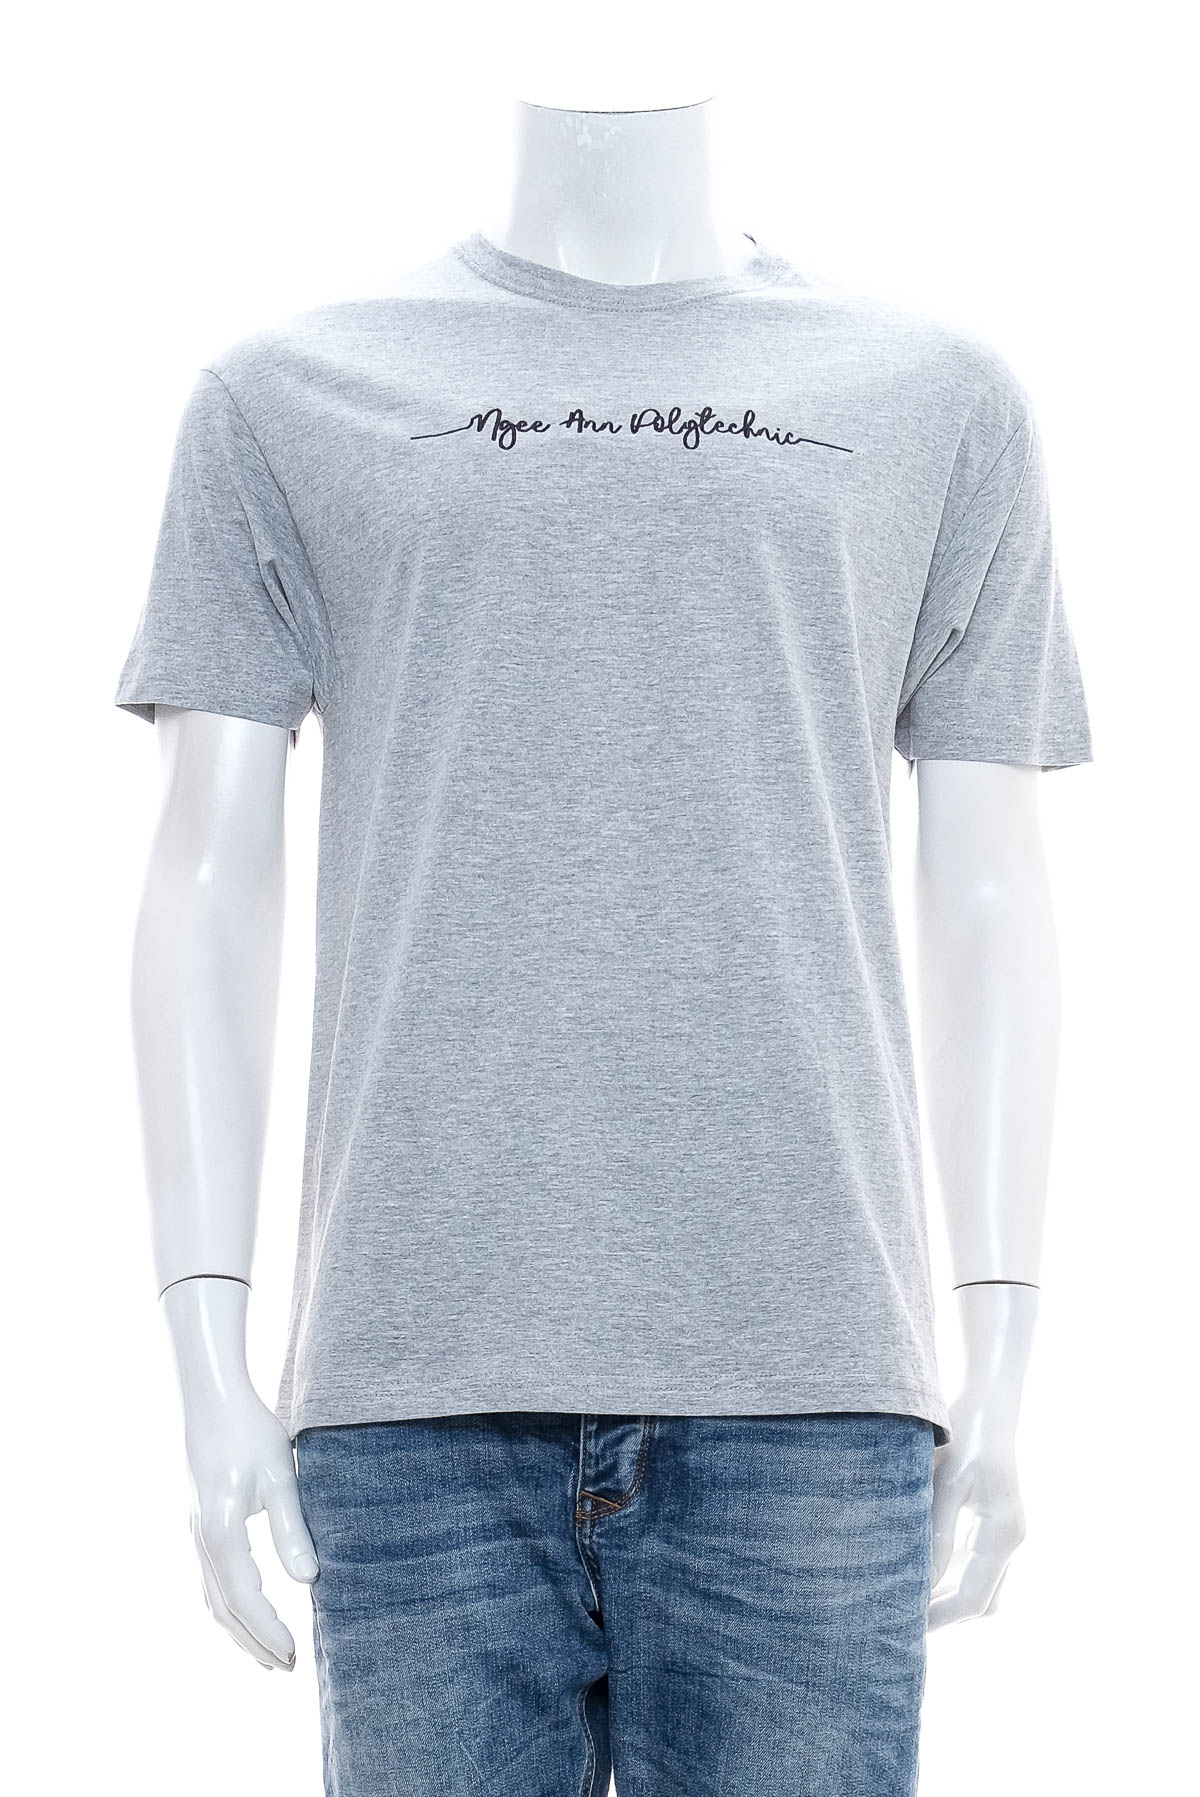 Men's T-shirt - North Harbour - 0